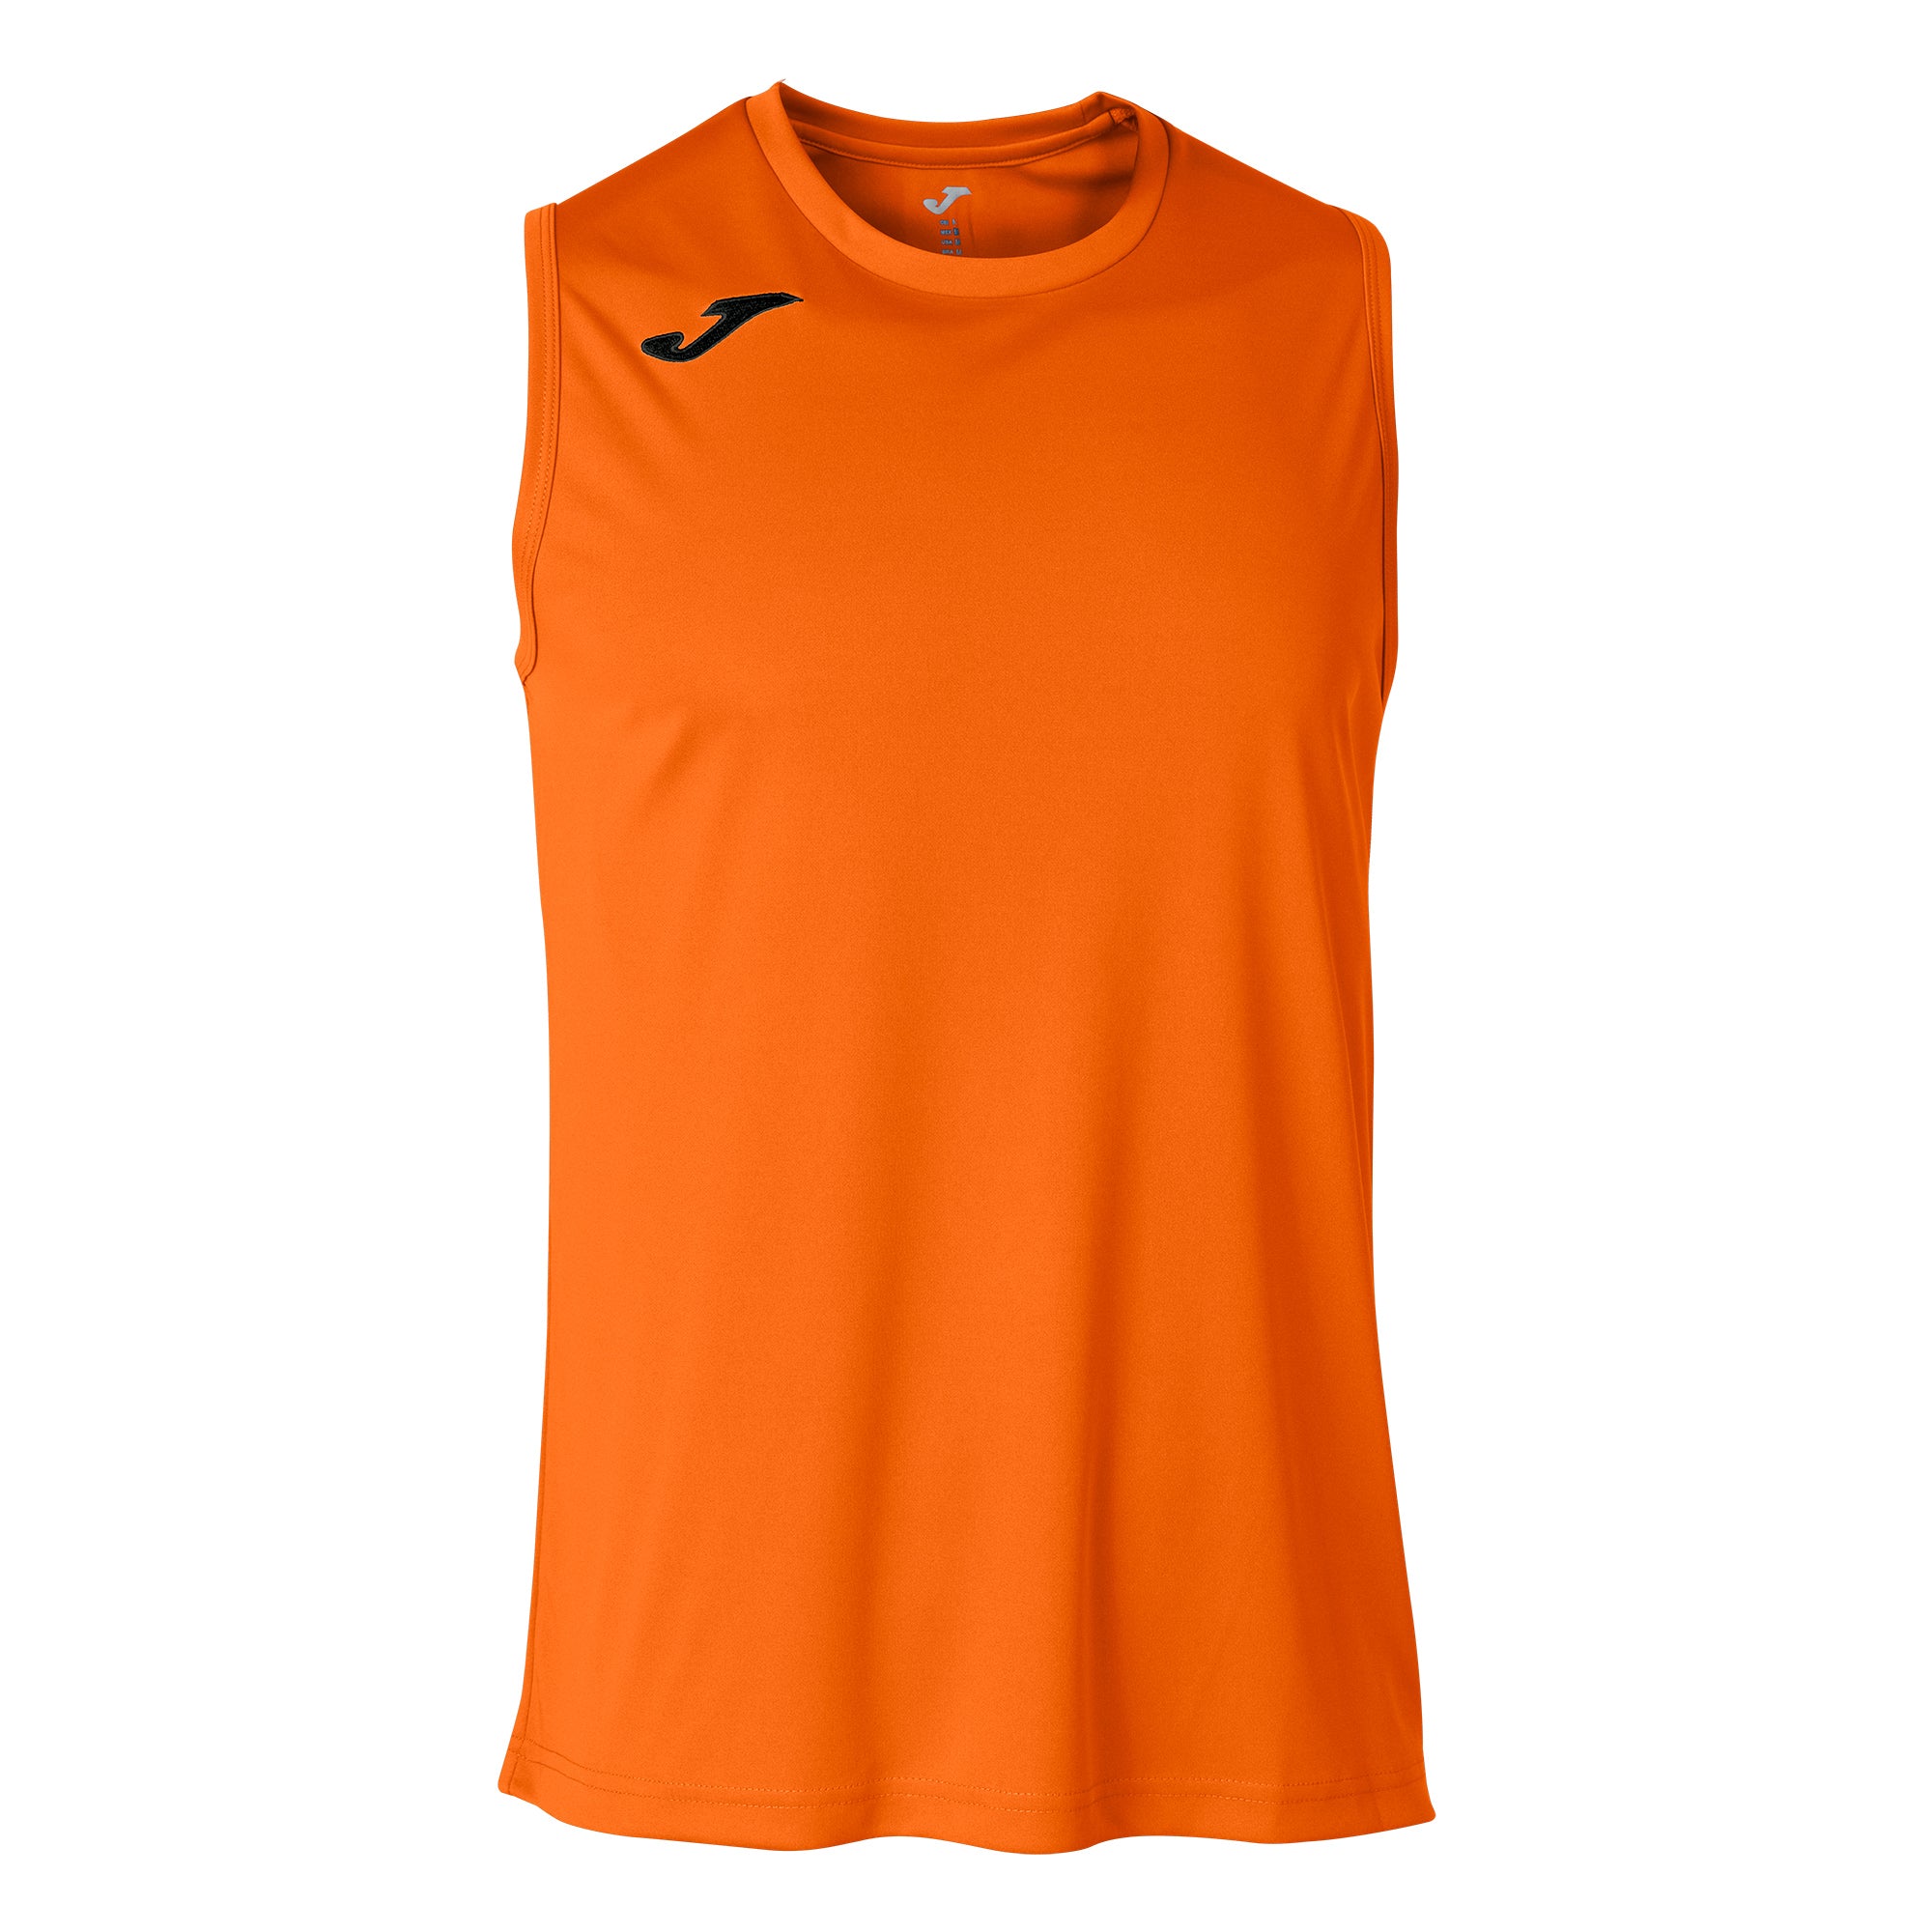 Teamwear - Joma Combi Sleeveless - Orange - JO-101660-880